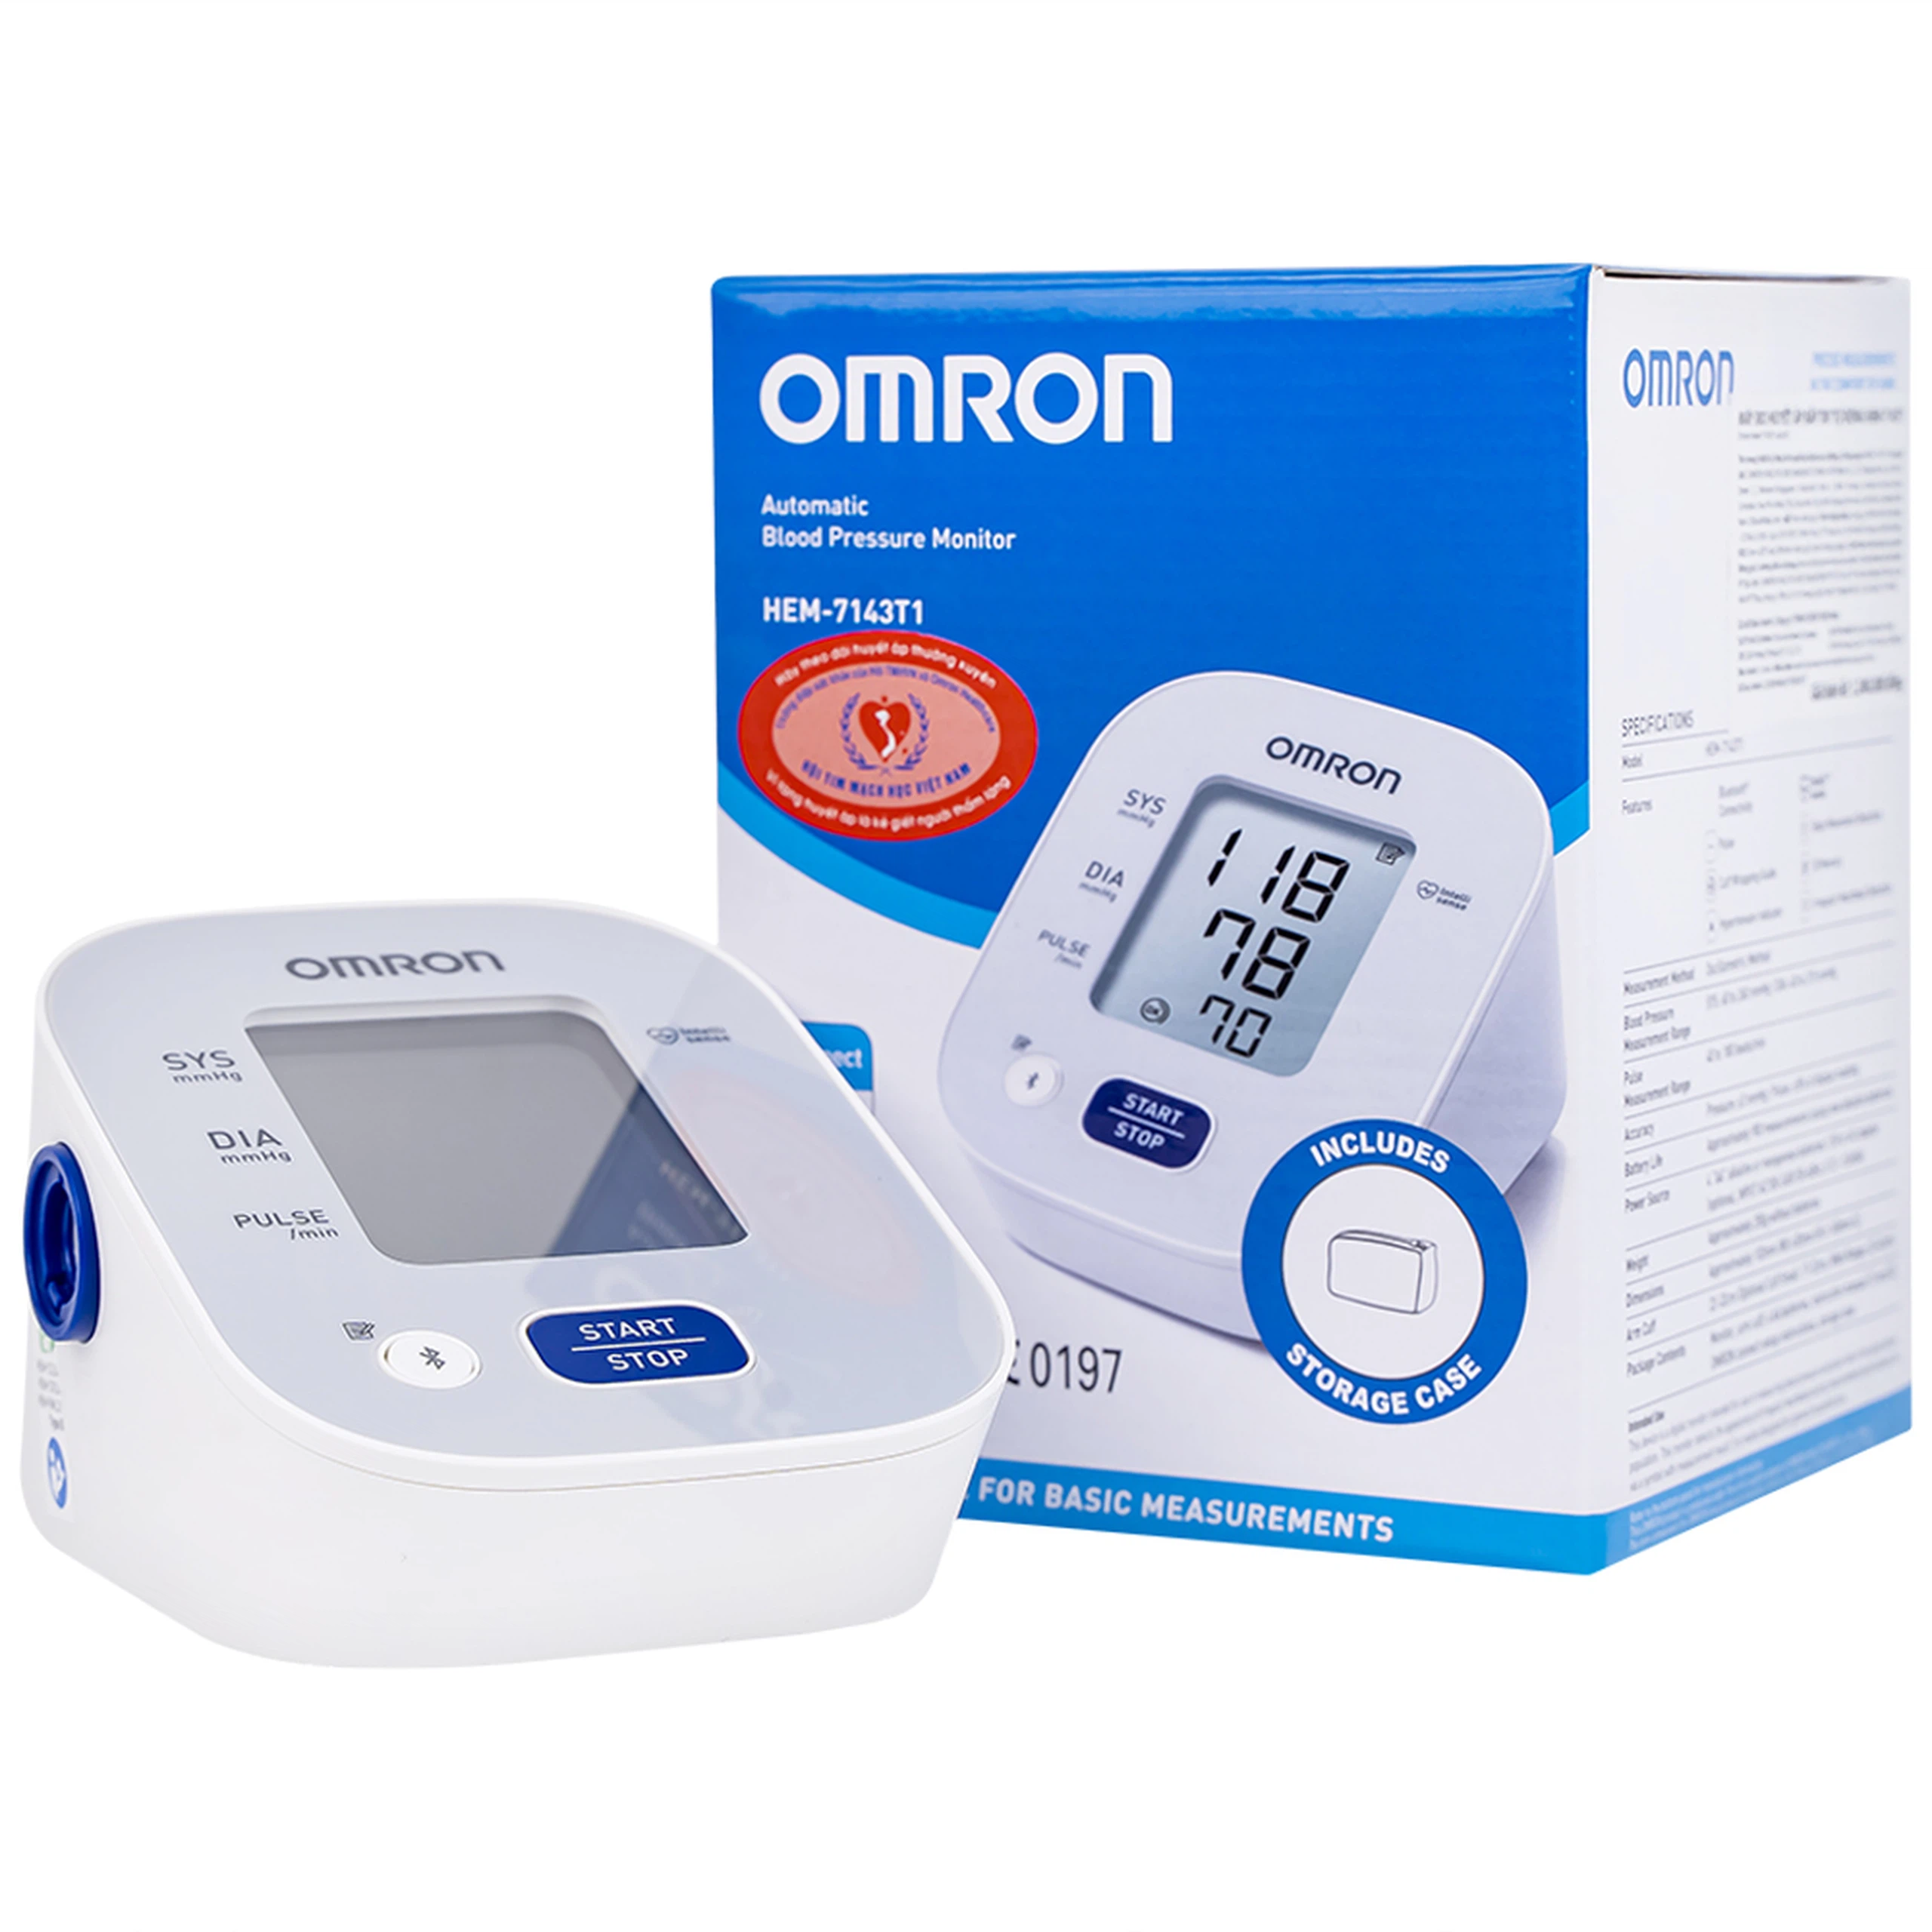 Máy đo huyết áp bắp tay tự động Omron HEM 7143T1 cho kết quả chính xác, nhanh chóng